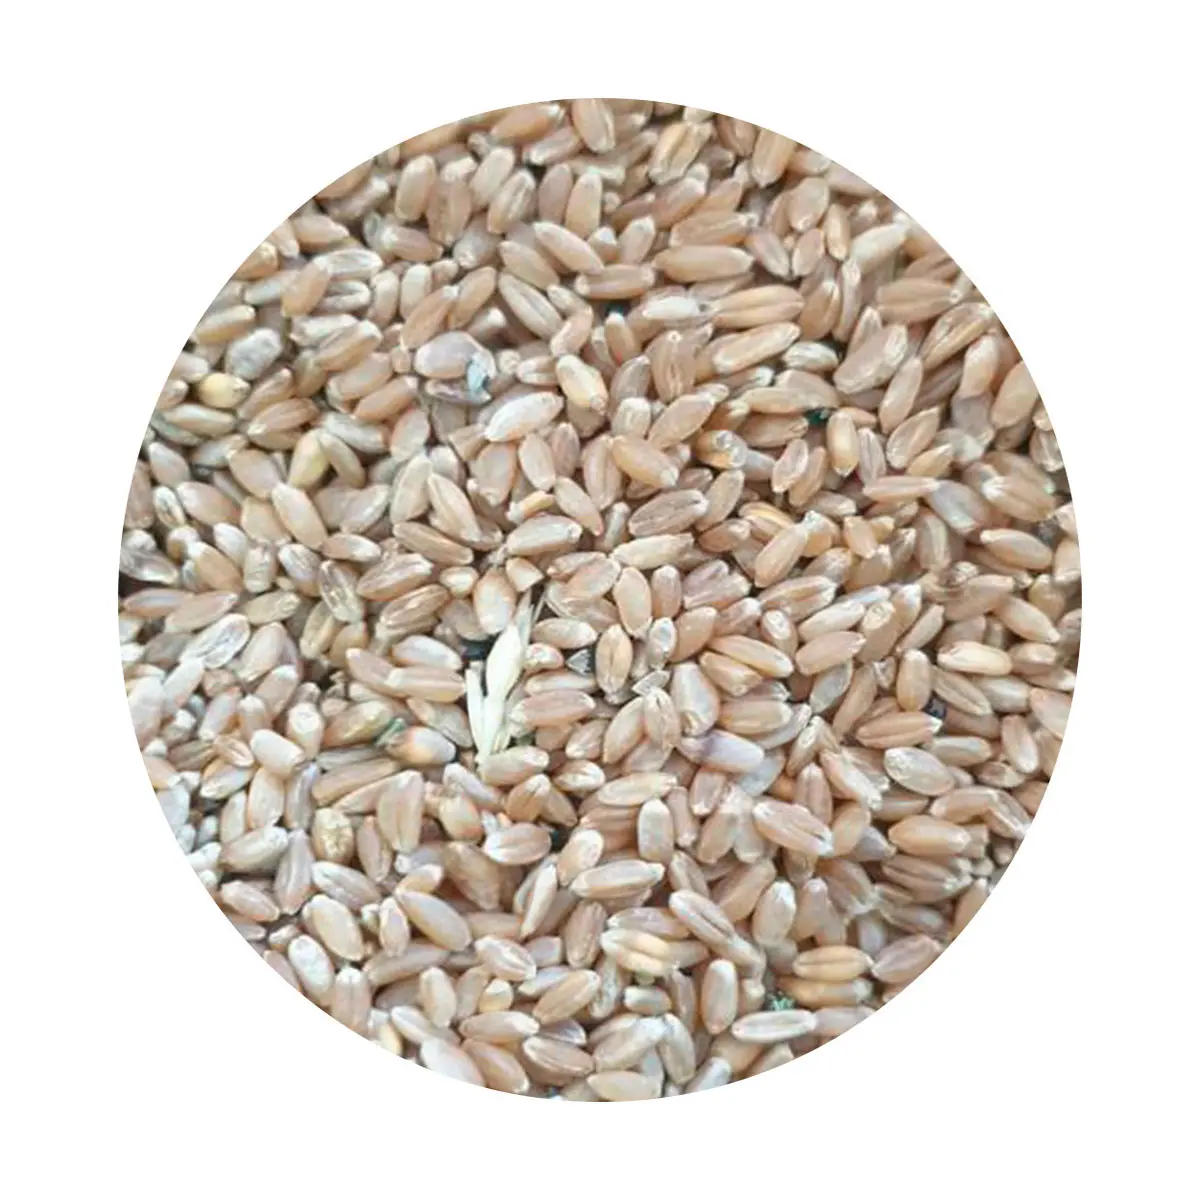 Пшеничное зерно в сыпучих продуктах Казахстана цены производителя пшеничное зерно